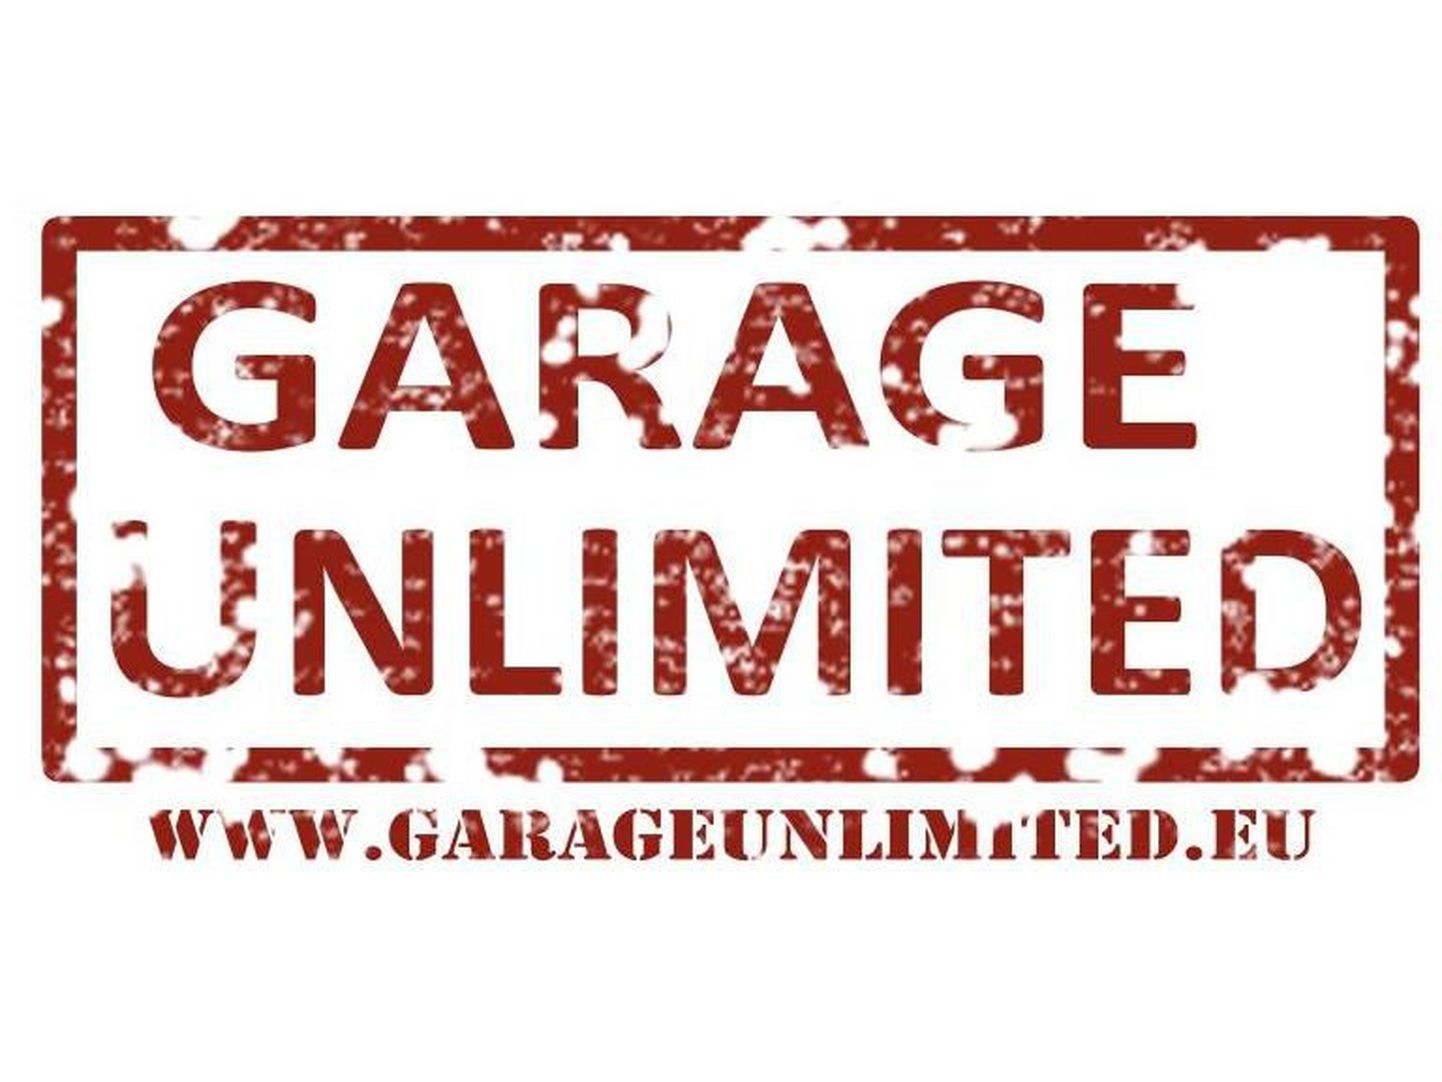 Garage Unlimited